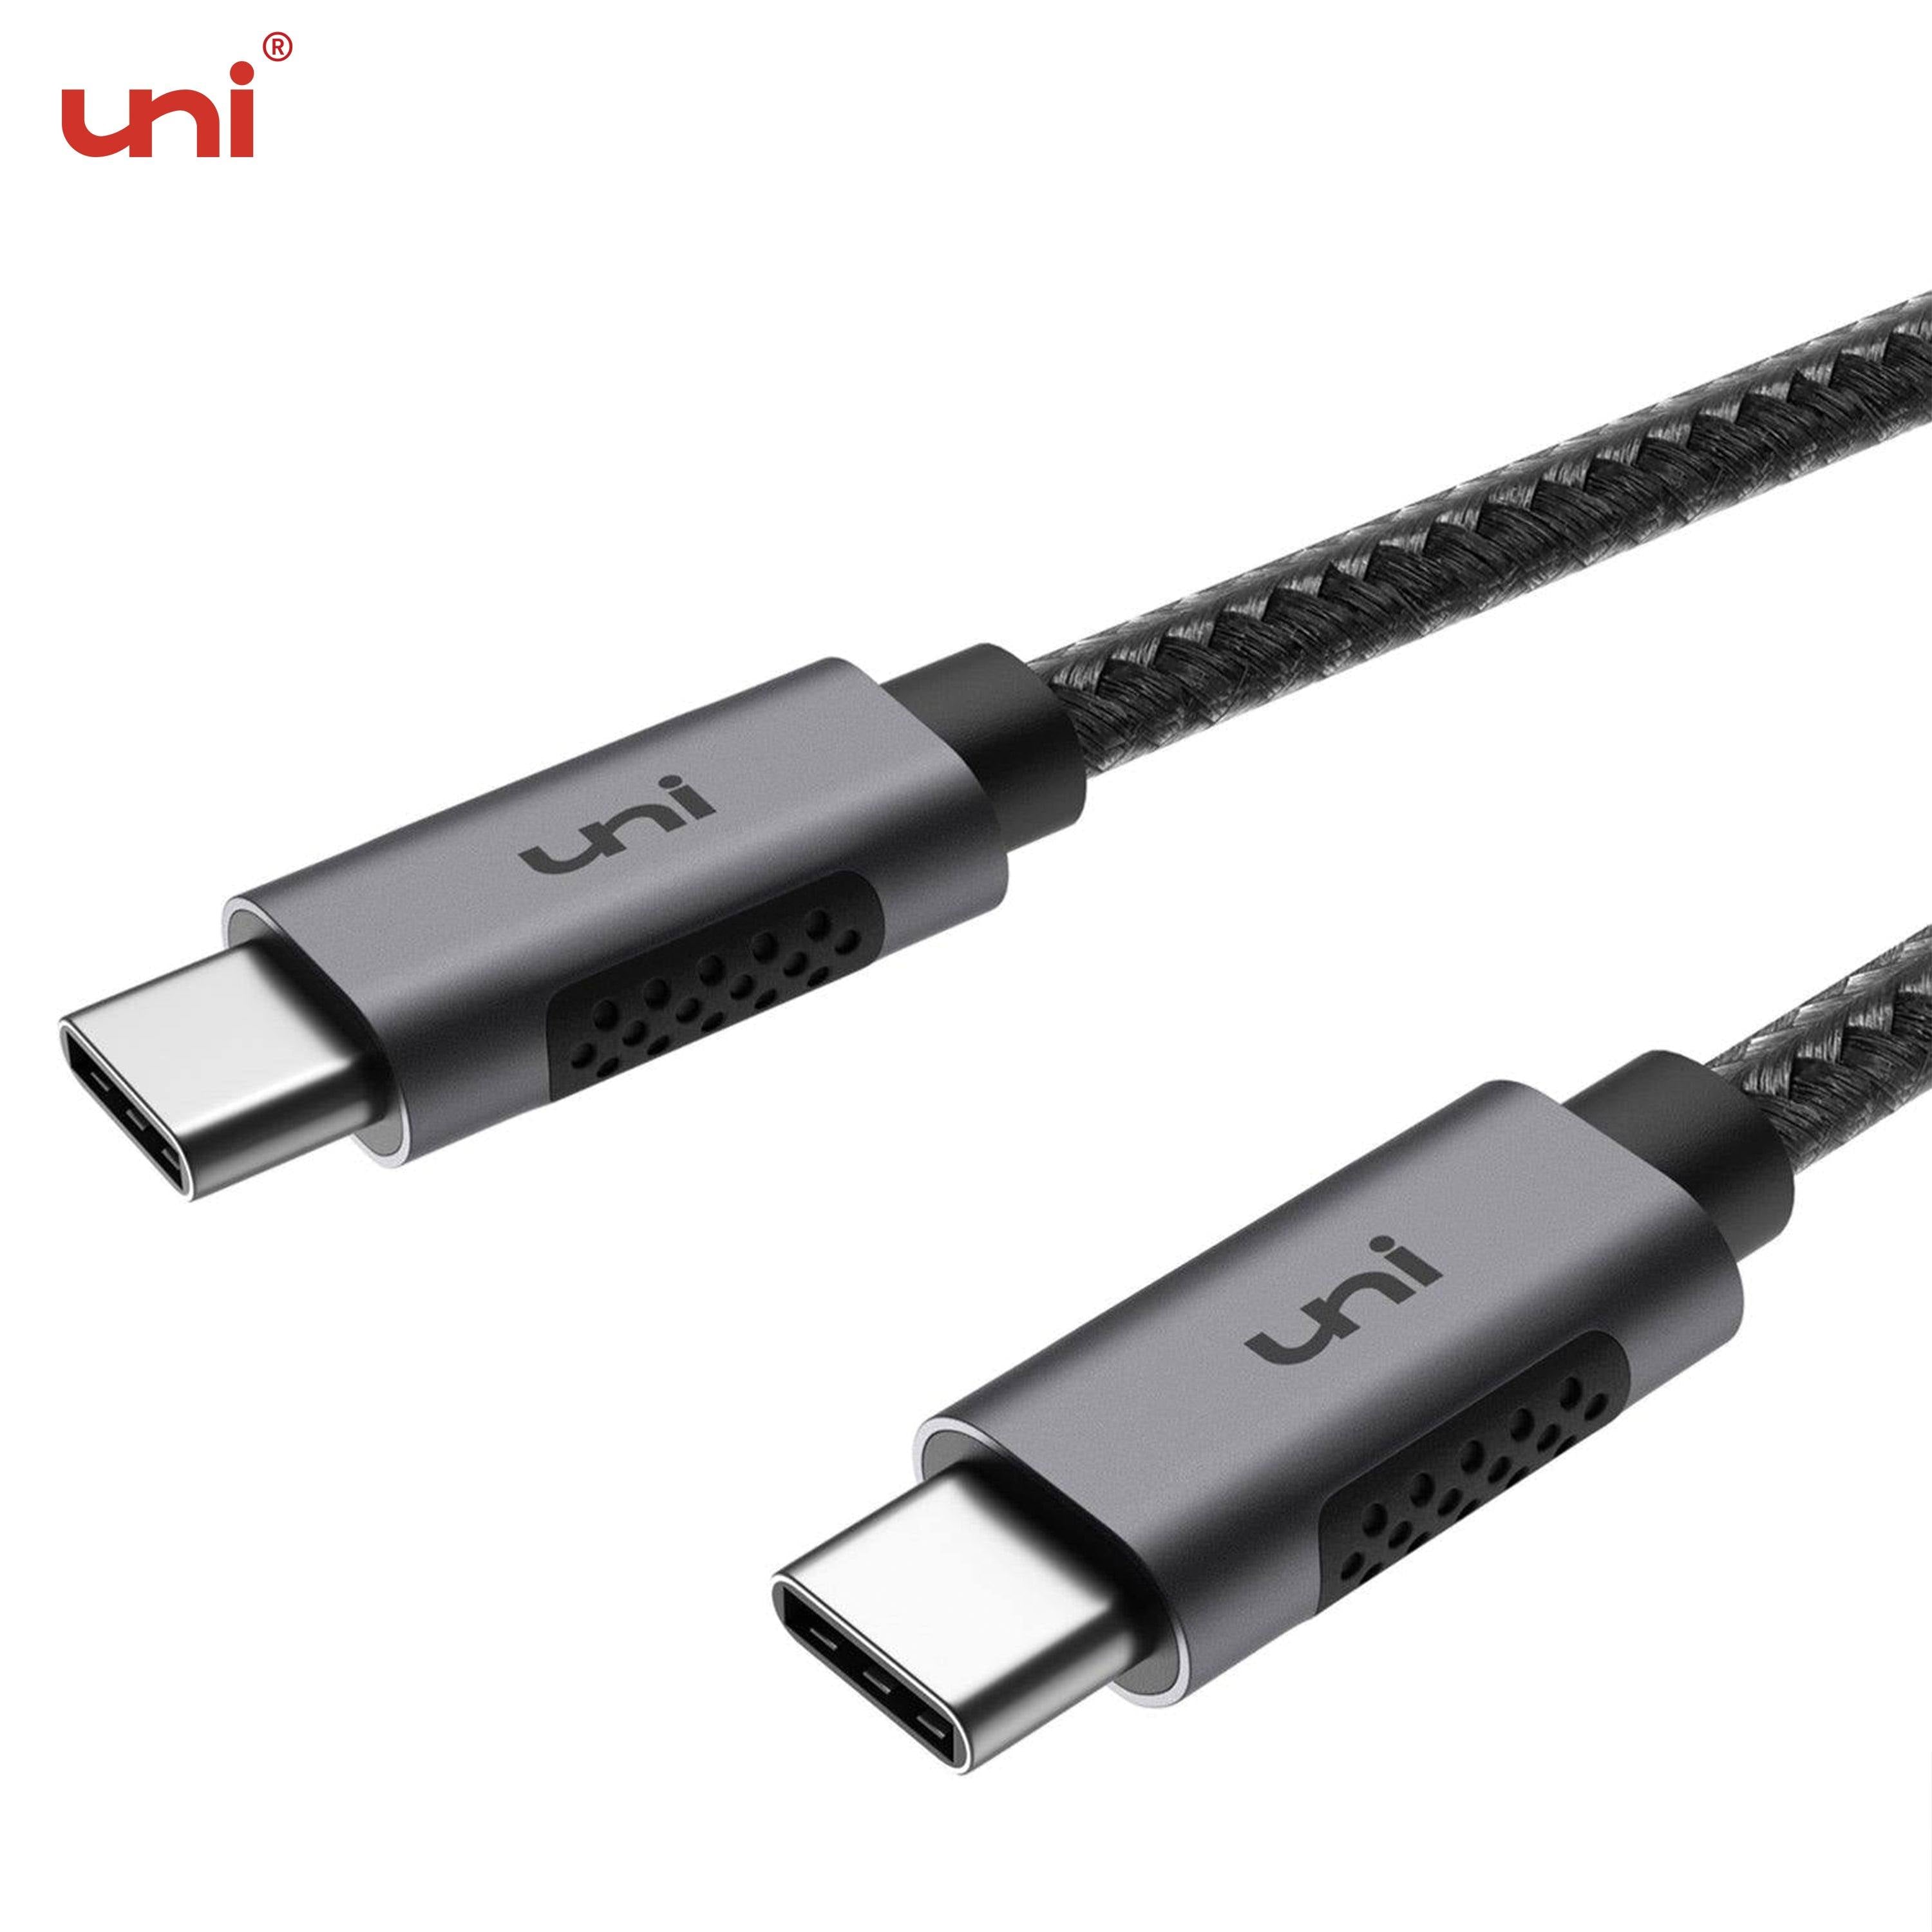 Vittig køre Jeg har erkendt det uni® USB C Fast Charging Cable, 100W 5A Cable, Extra Durable